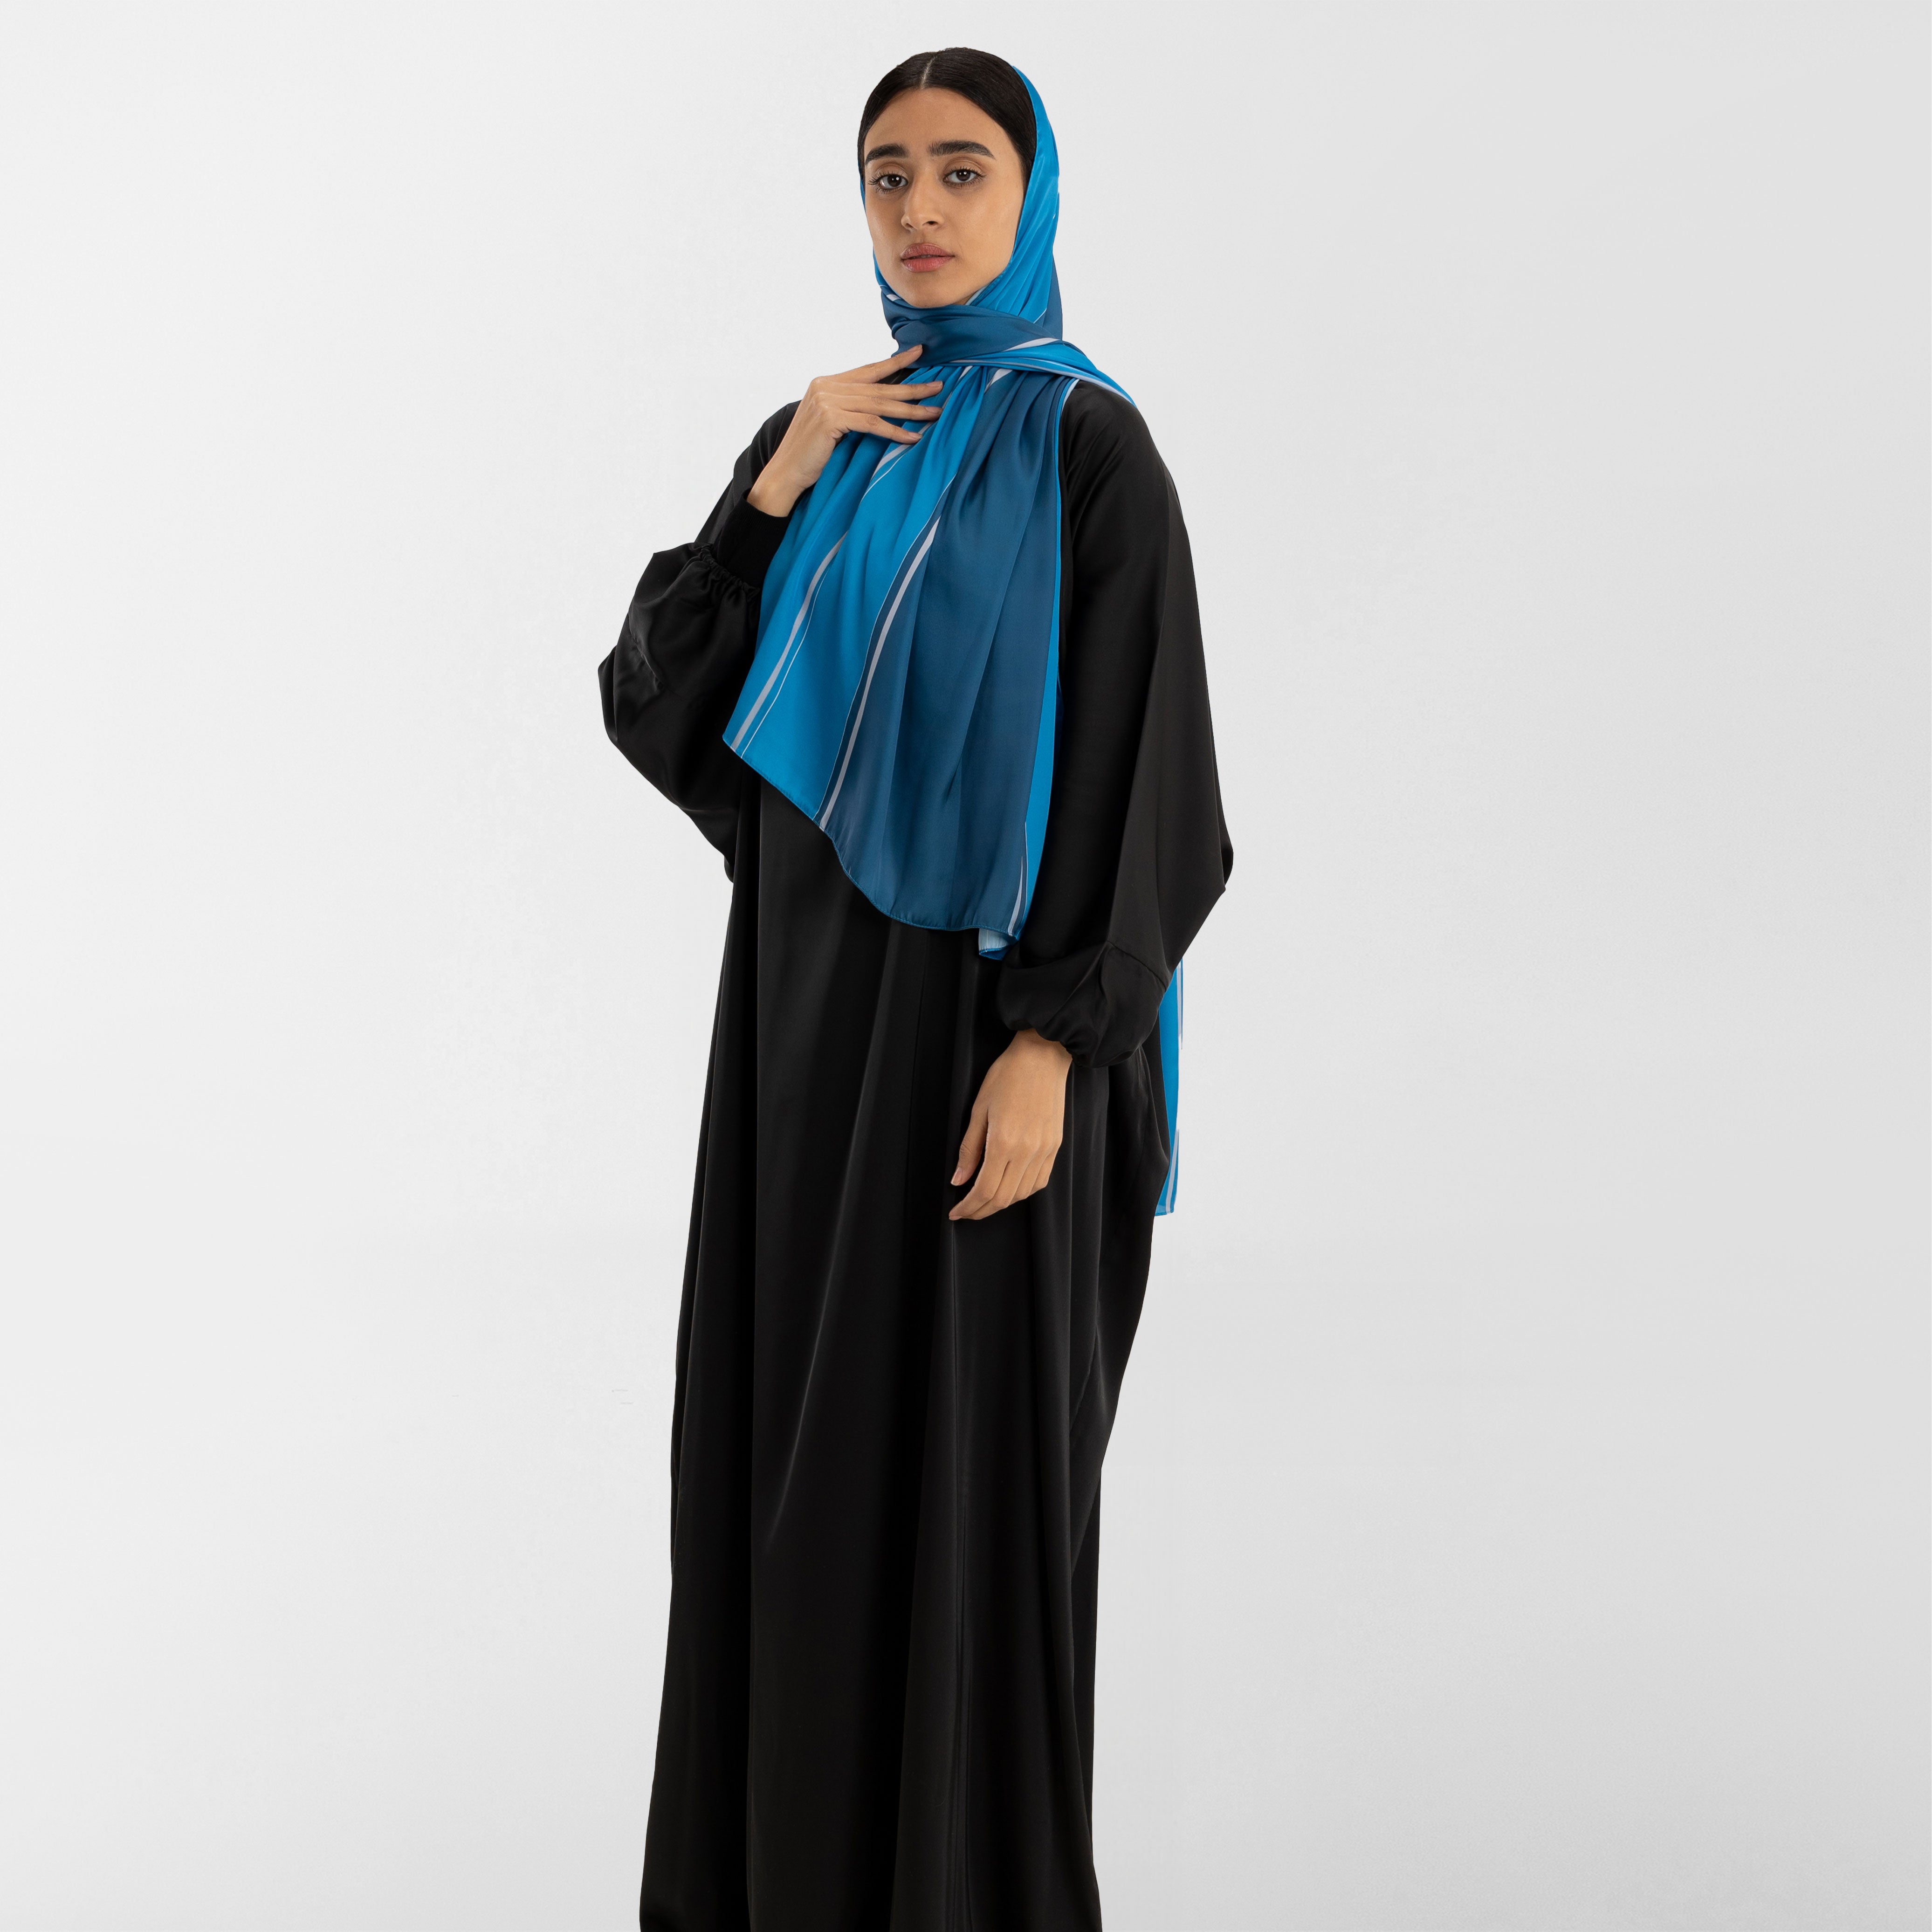 Prayer Wear - Isdal AL-TAQWA BLUE